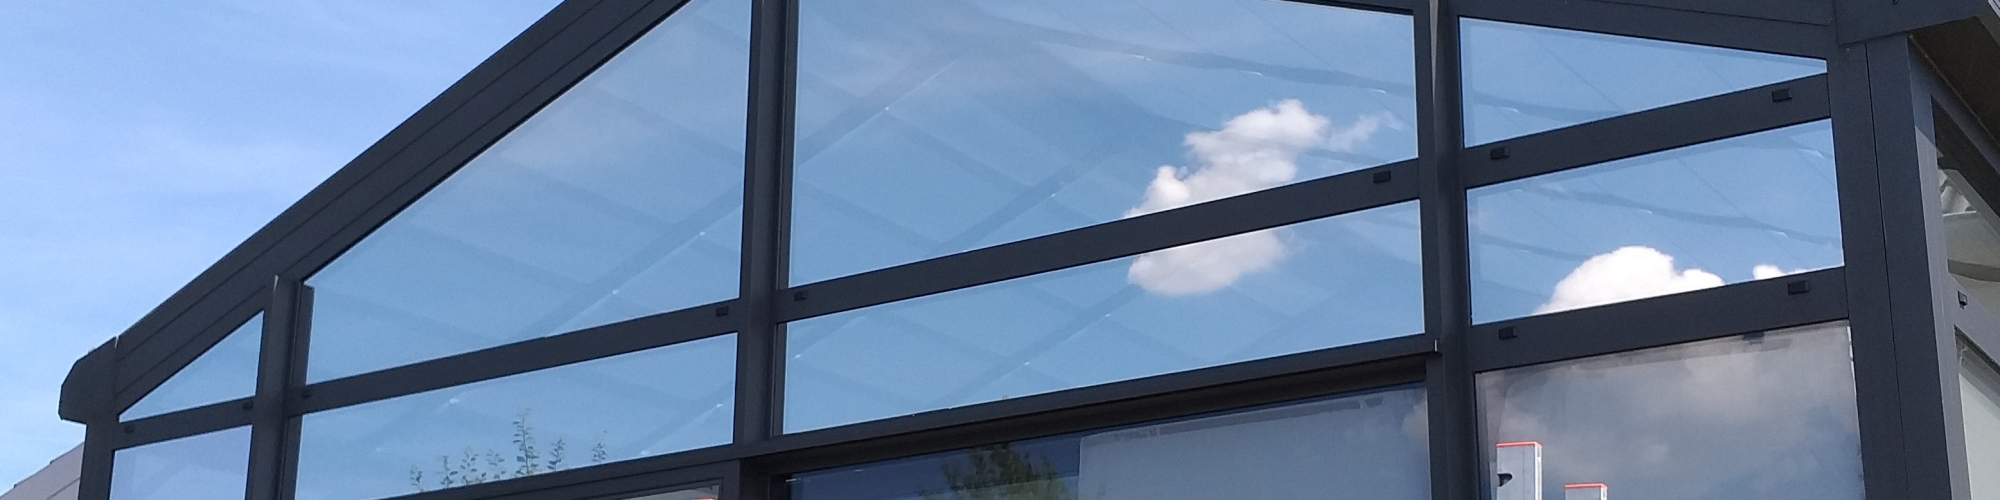 Wanddeko Metall Außen Einzigartig Fenster sonnenschutz Außen